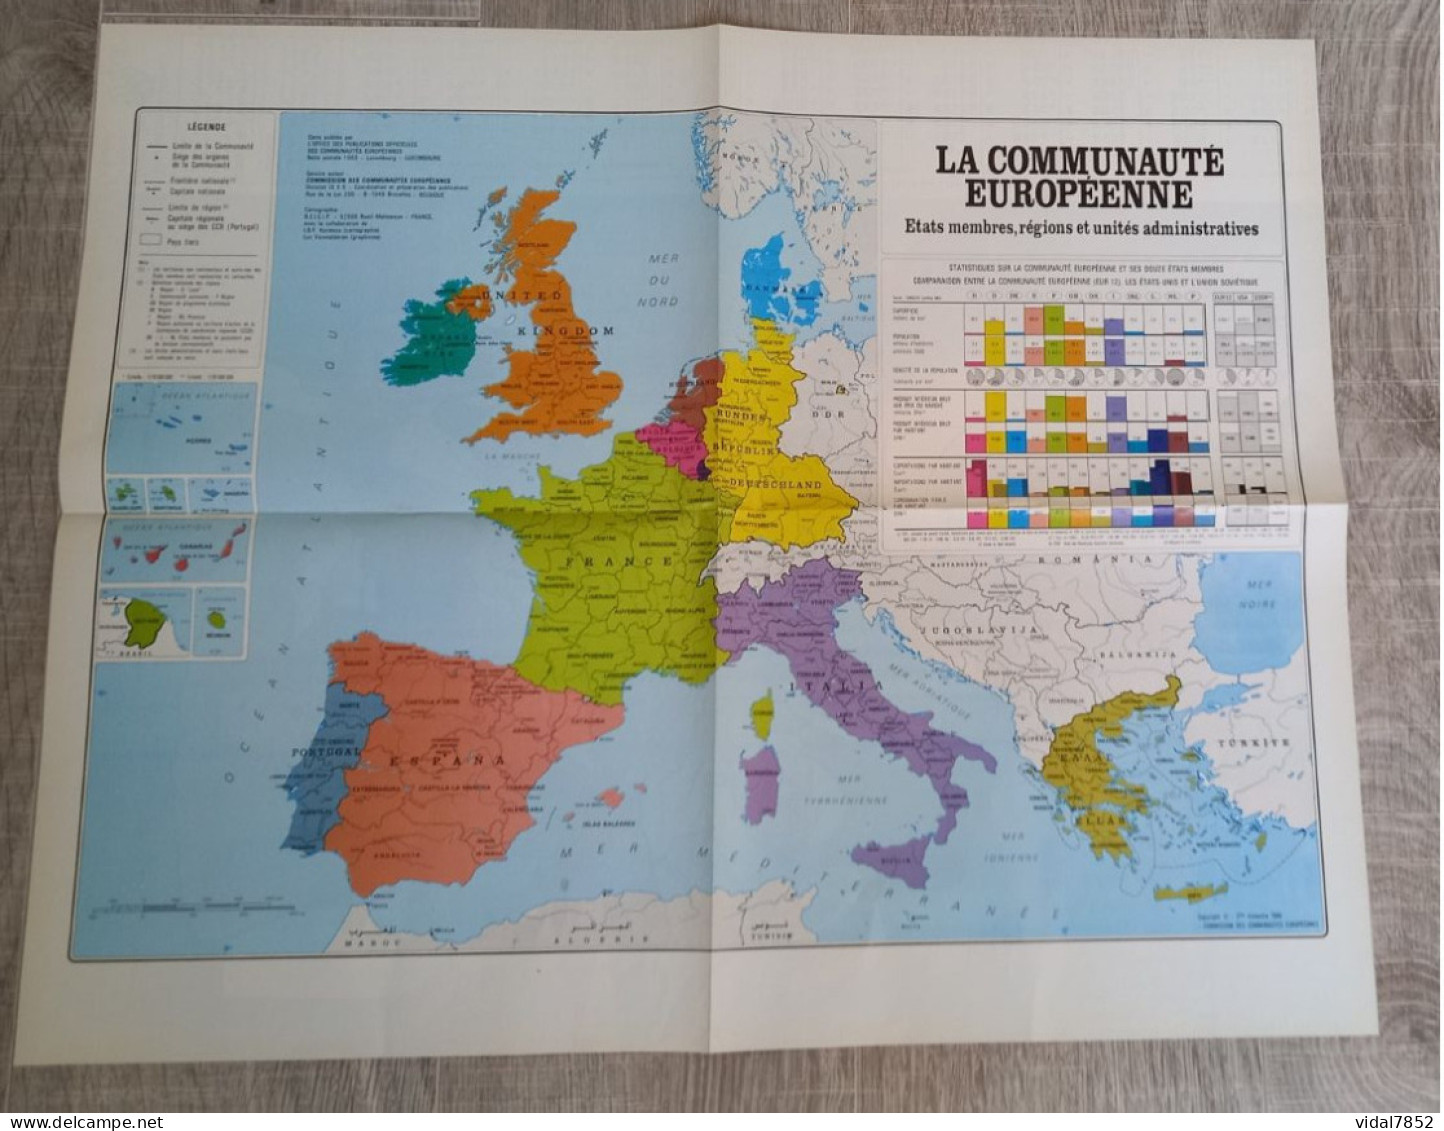 Calendrier-Almanach Des P.T.T 1991-Poster Intérieur Communauté Européenne--Tom Jerry Département AIN-01-Référence 416 - Grand Format : 1991-00